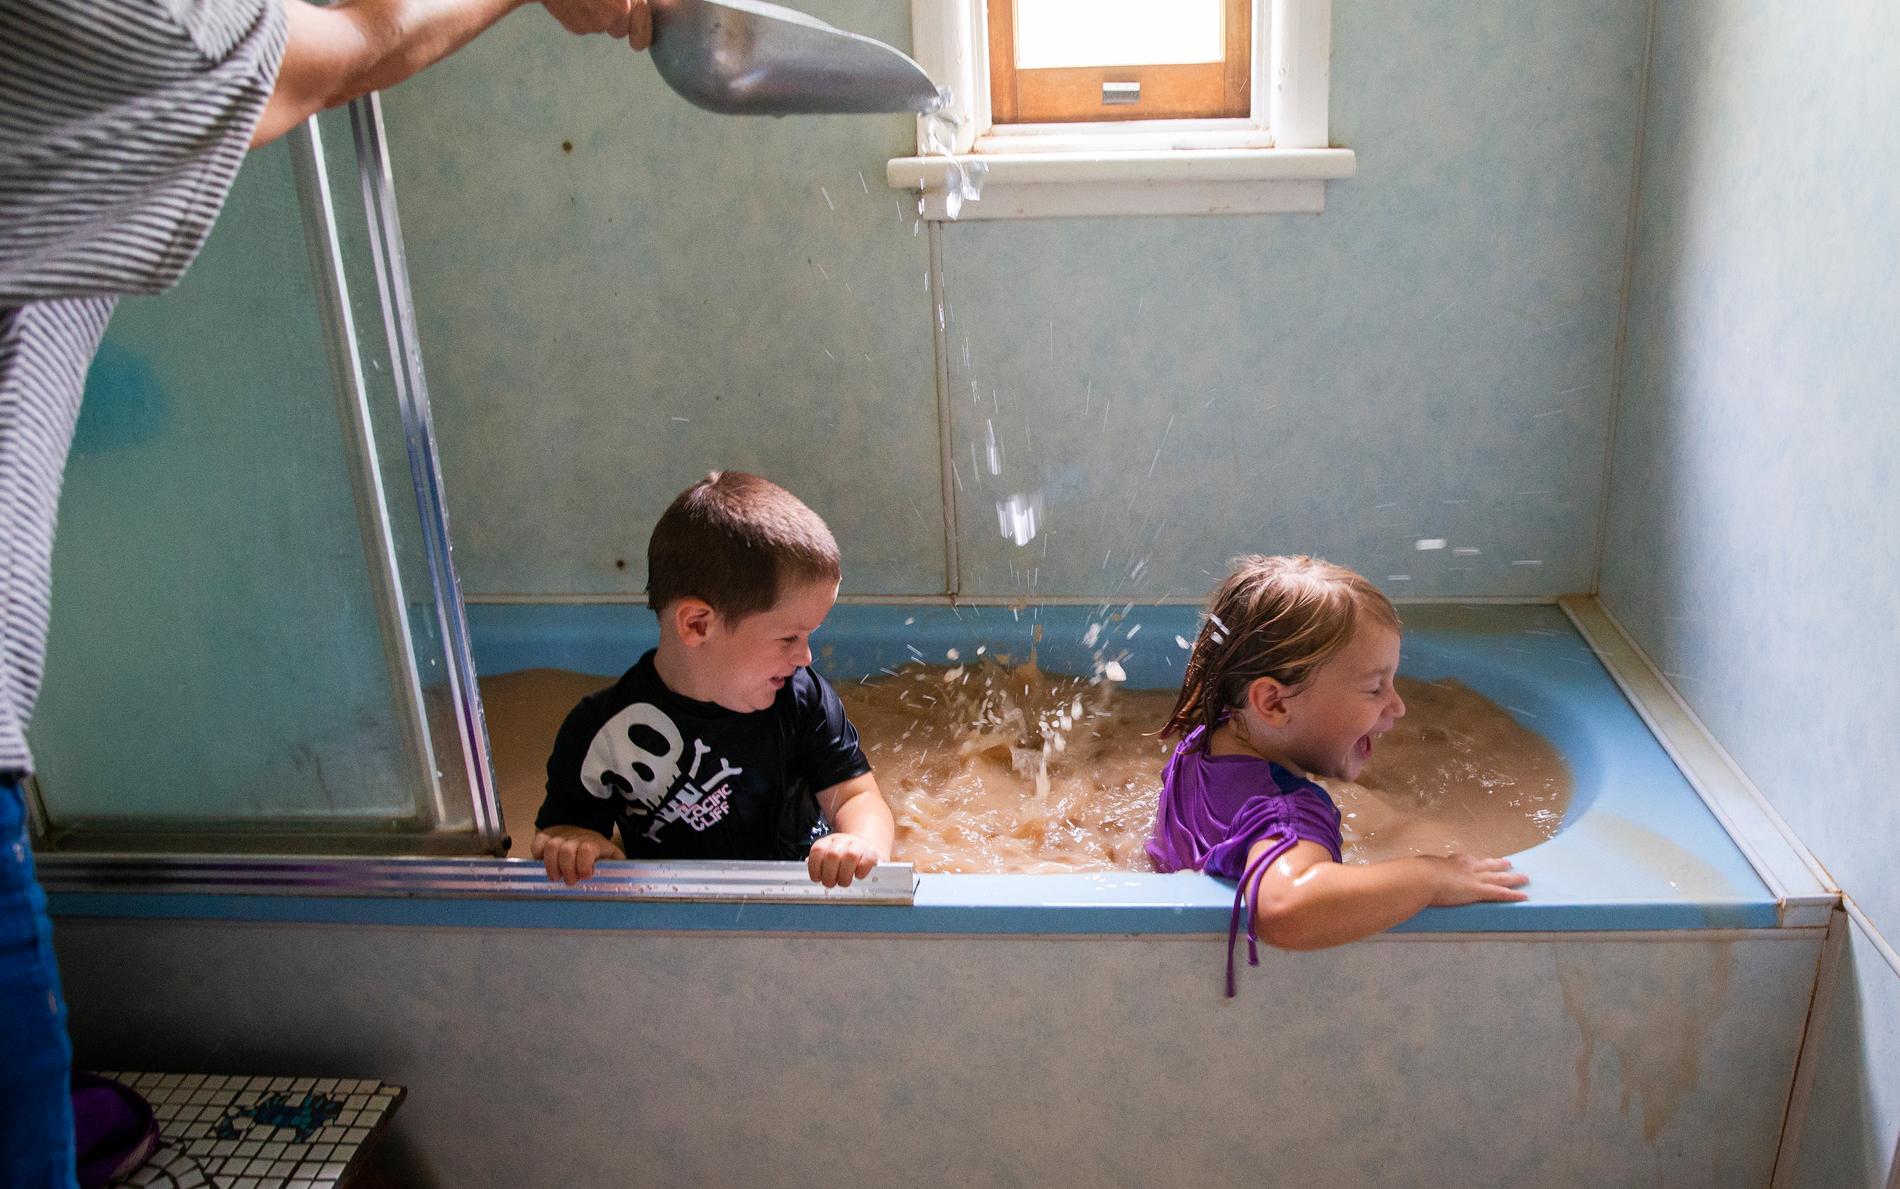 Talita Cohen och hennes bror Casey i Louth, Australien tar ett bad i det av torkan brunfärgade kranvattnet. Deras mor häller i is för ytterligare svalka.